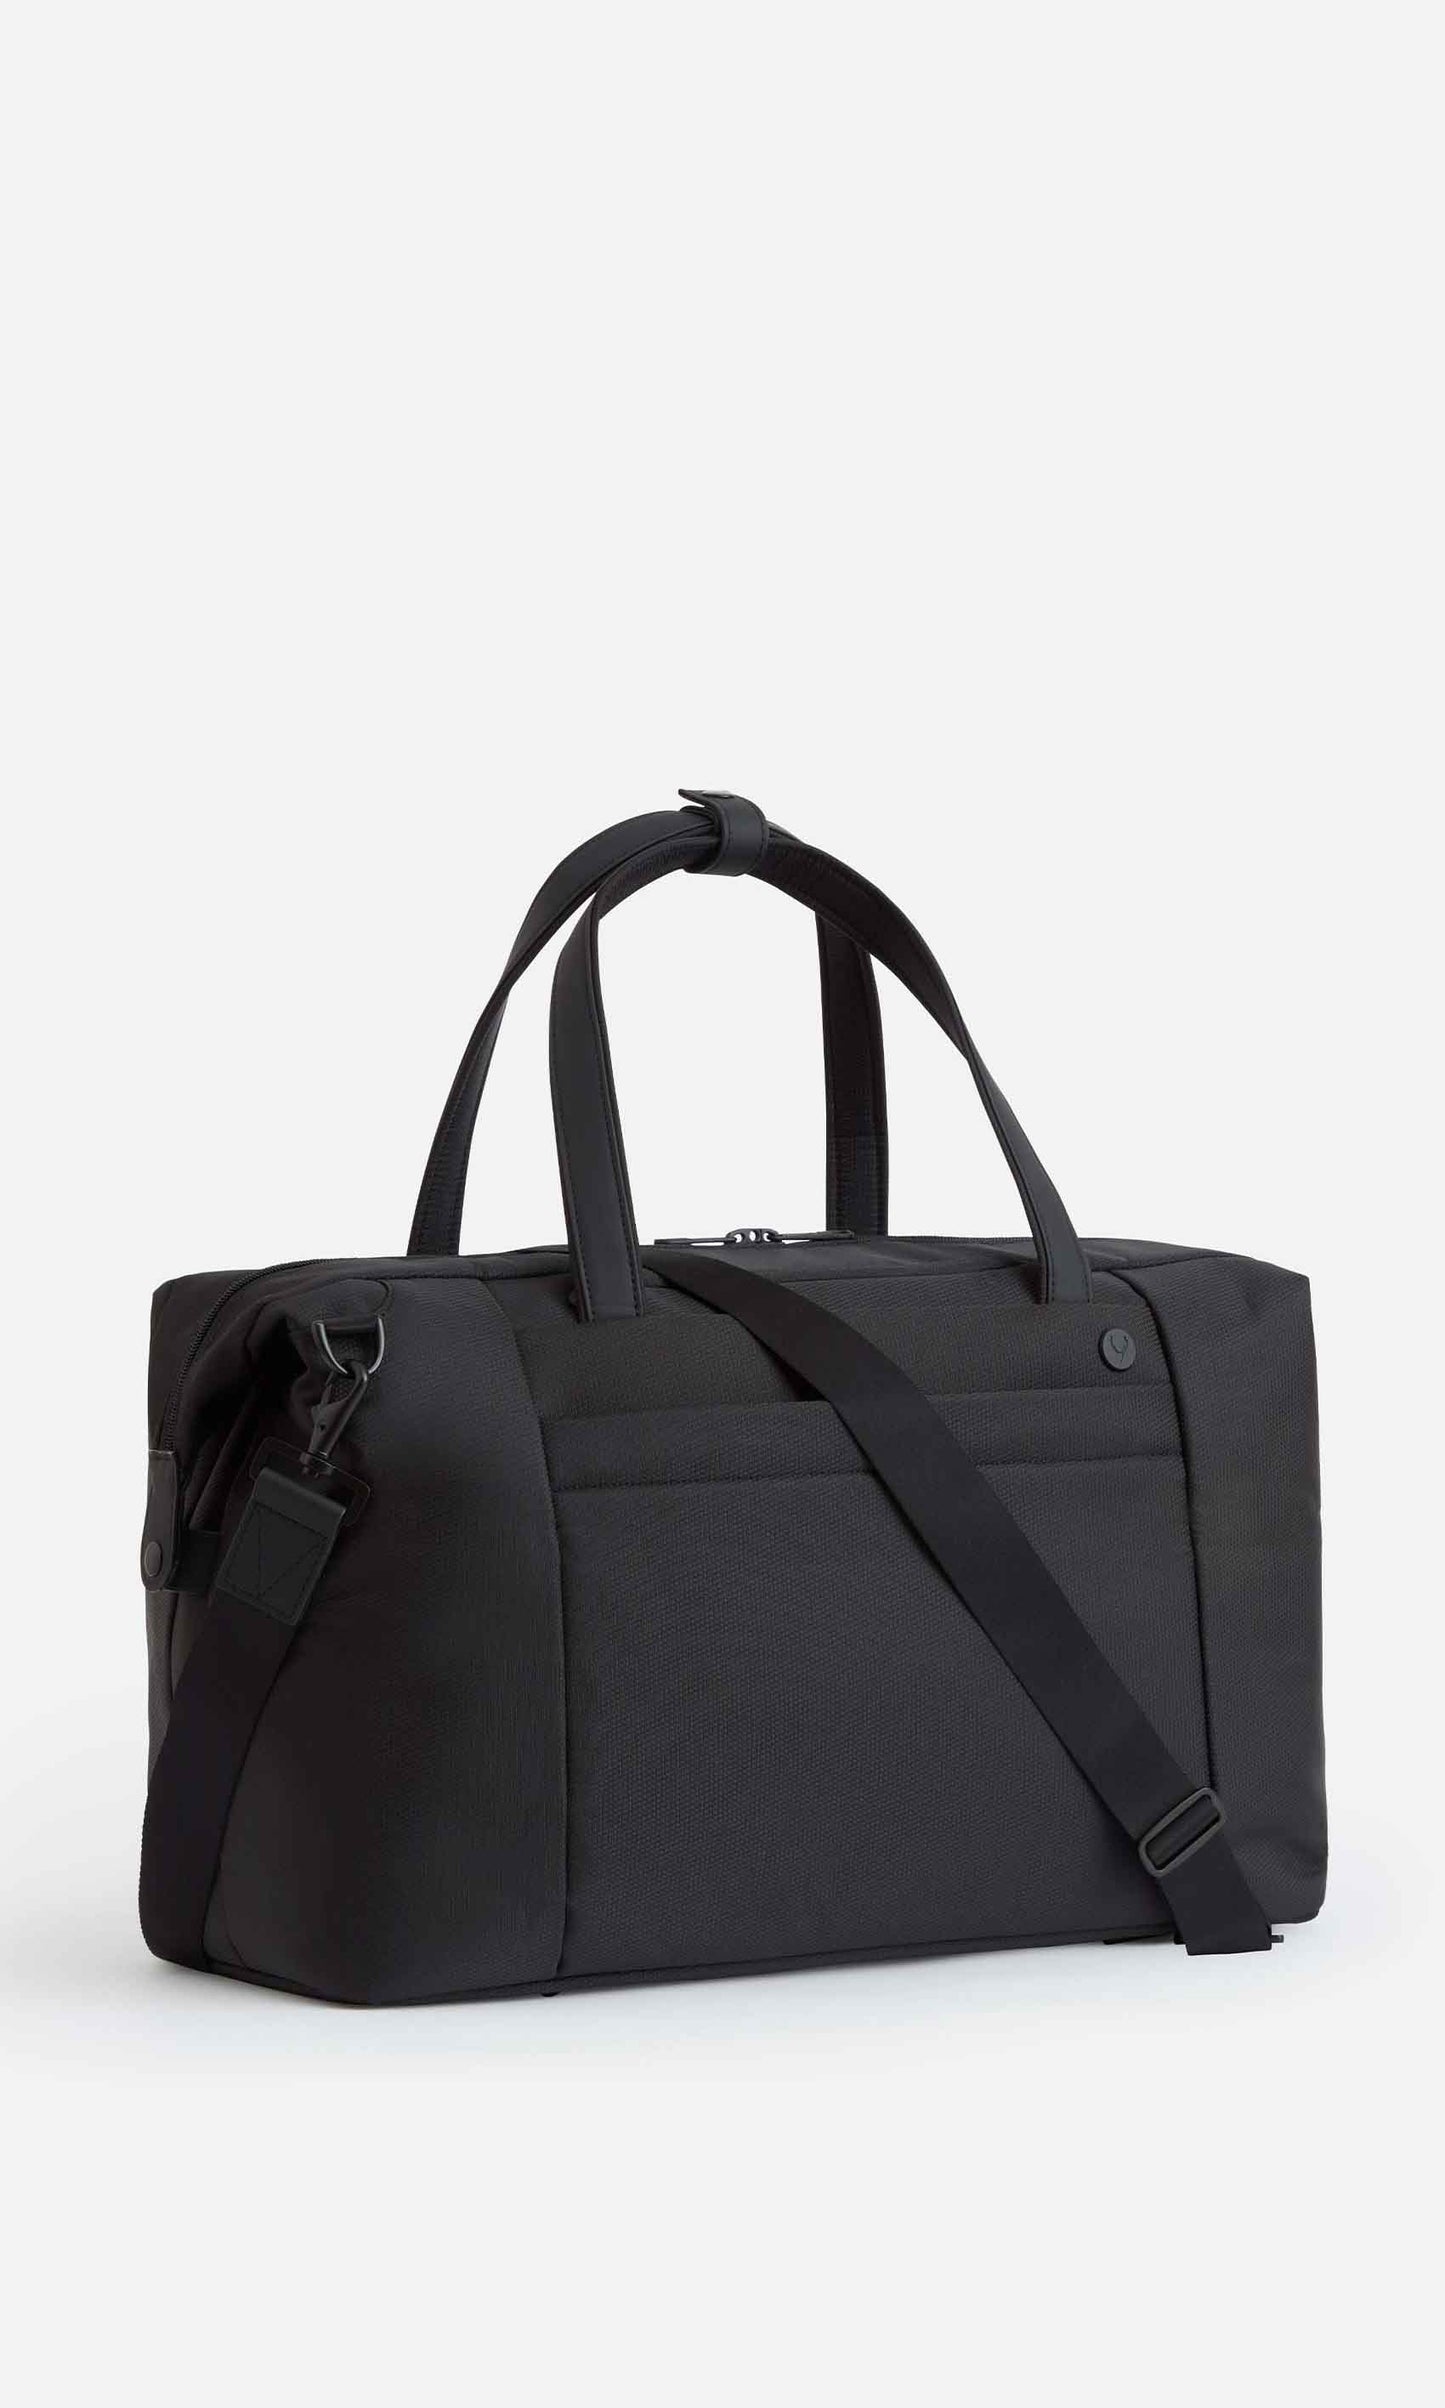 Prestwick weekend bag in black